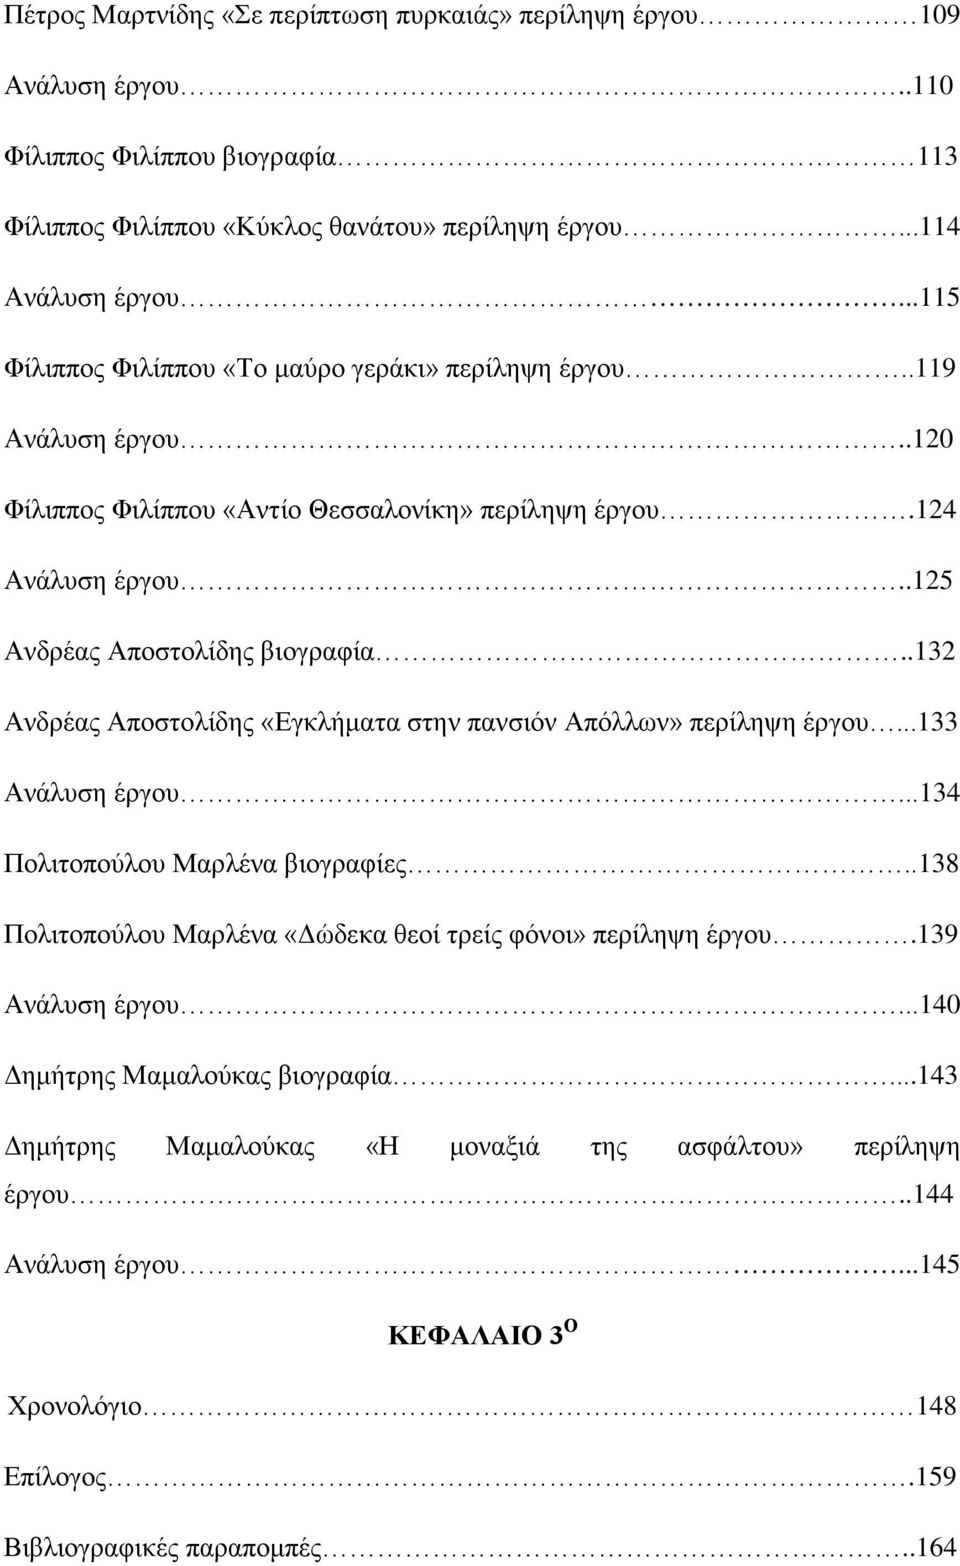 .132 Ανδρέας Αποστολίδης «Εγκλήματα στην πανσιόν Απόλλων» περίληψη έργου...133 Ανάλυση έργου...134 Πολιτοπούλου Μαρλένα βιογραφίες.